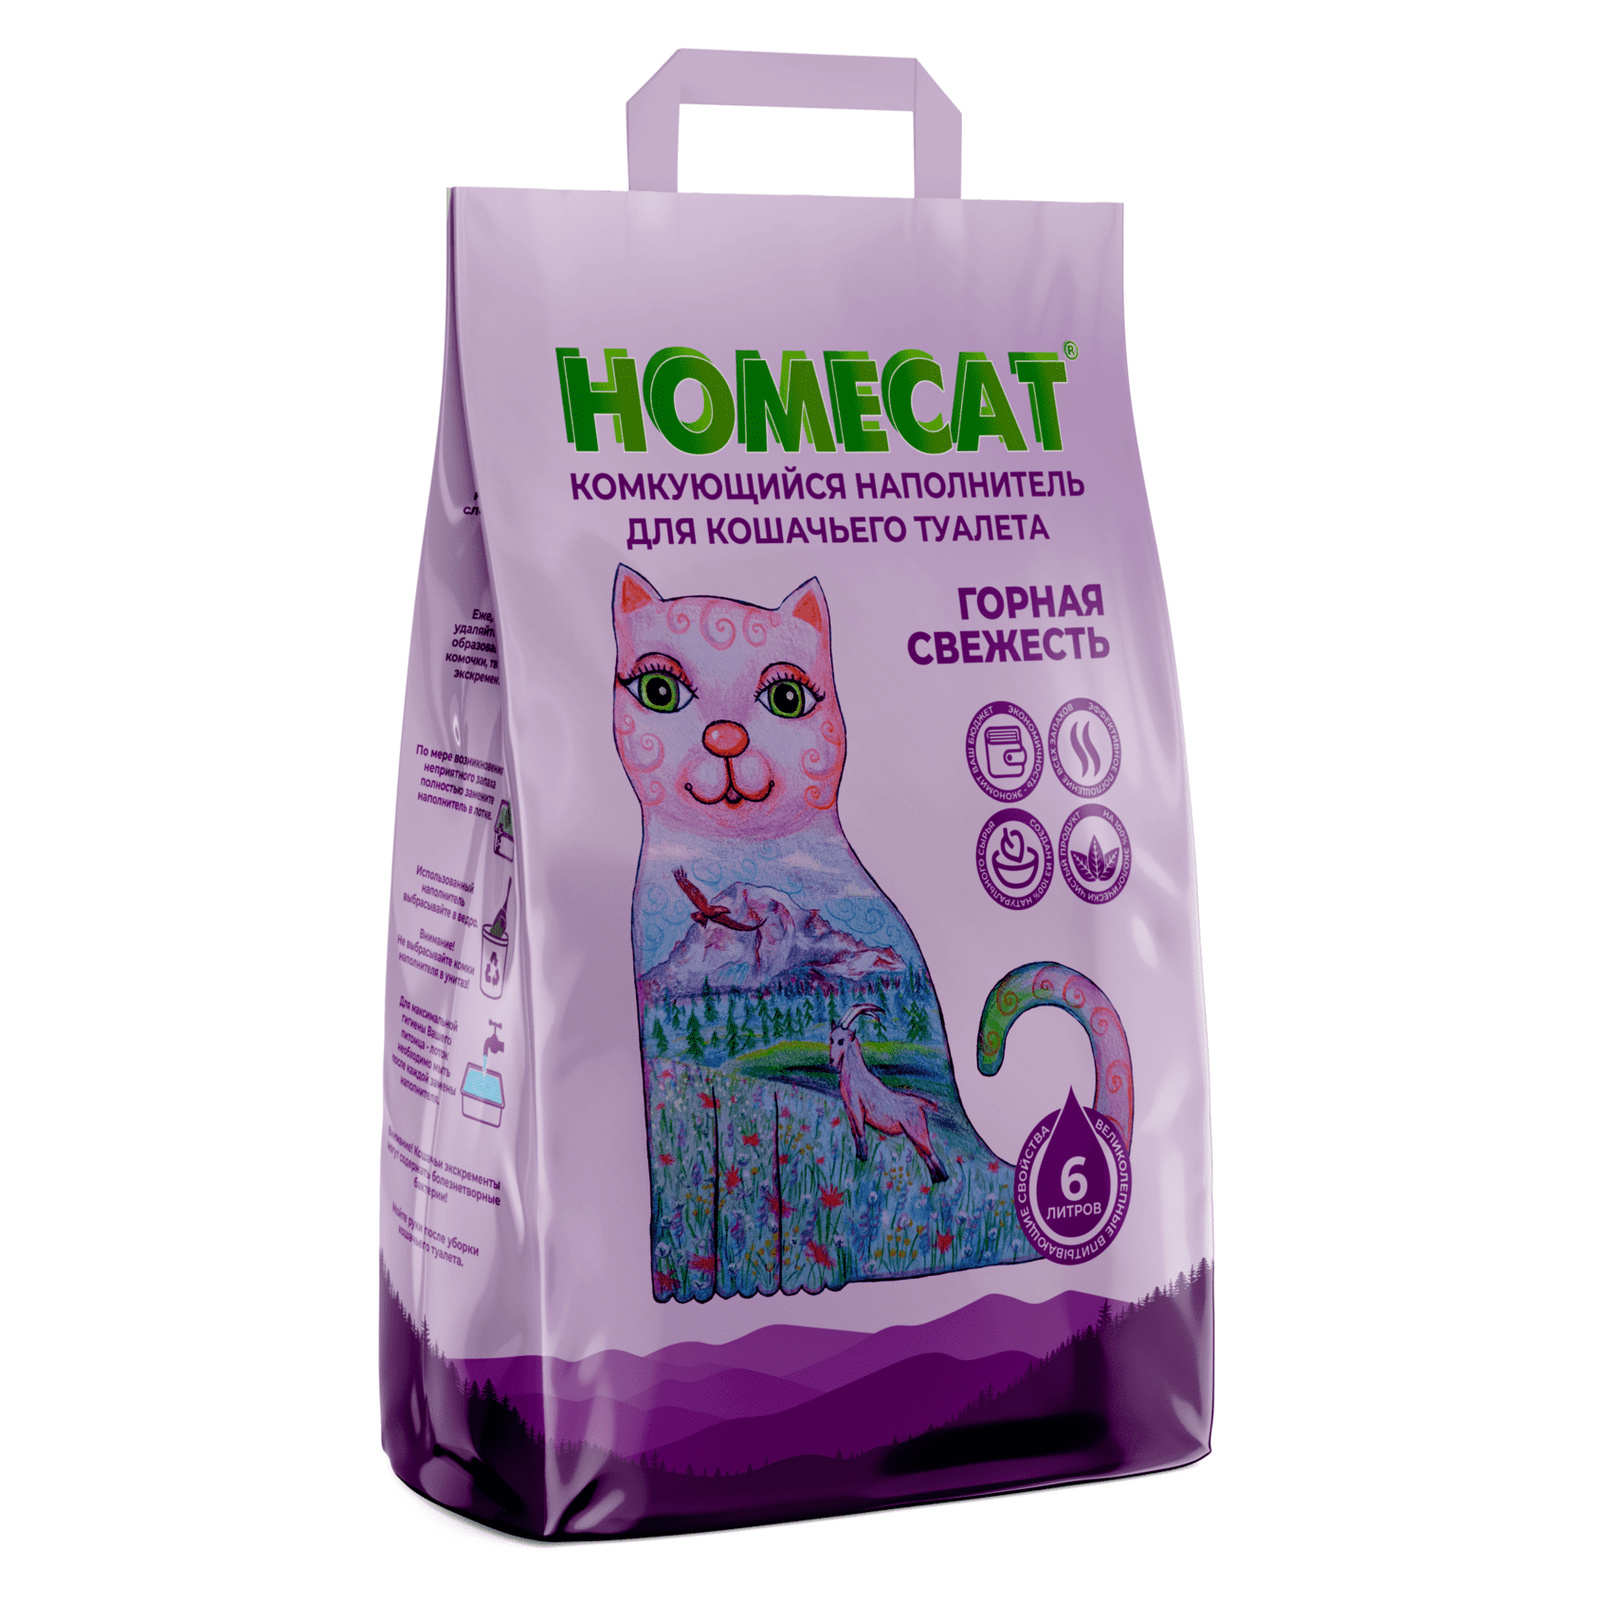 Homecat наполнитель Homecat наполнитель комкующийся наполнитель (10 кг) homecat наполнитель homecat наполнитель древесный наполнитель мелкие гранулы 20 кг